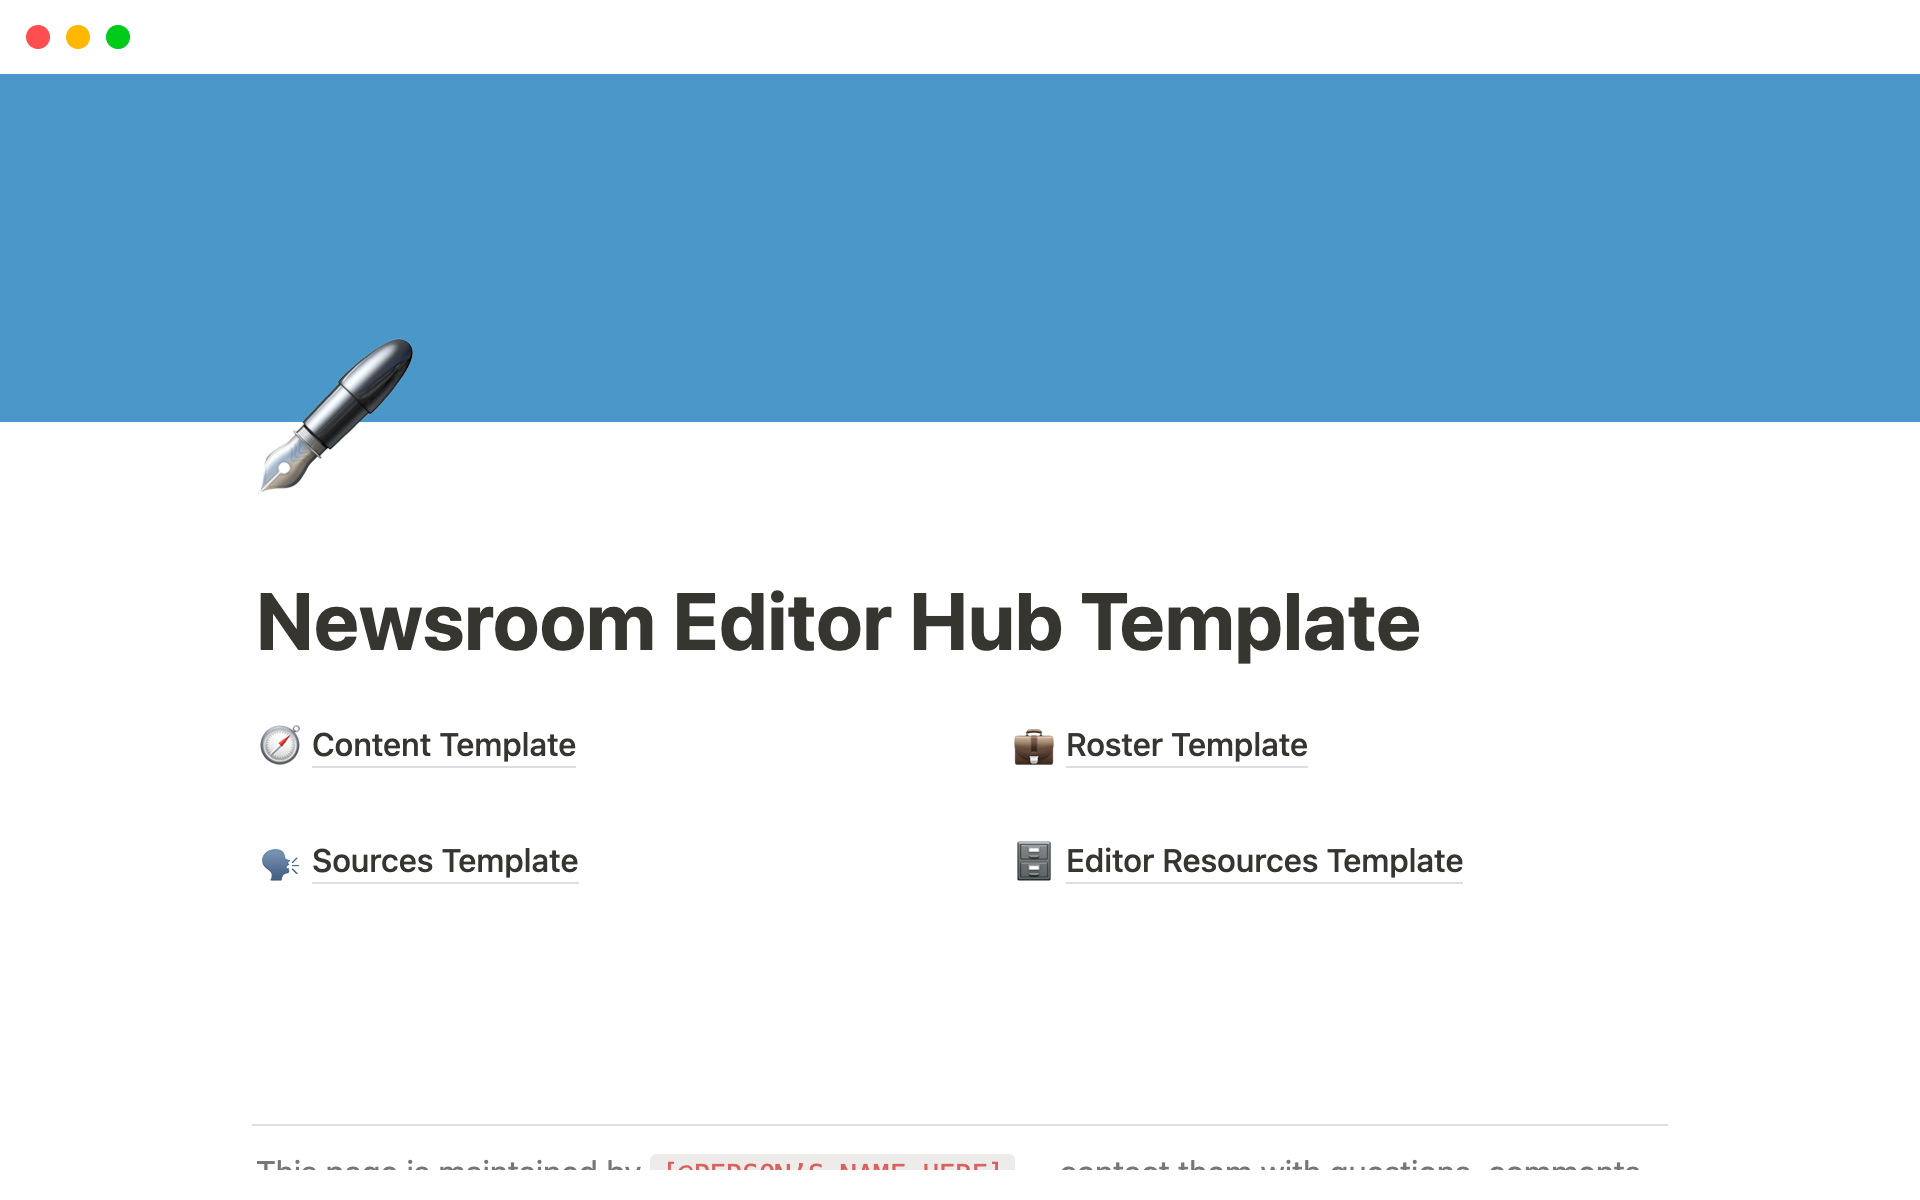 Uma prévia do modelo para Newsroom Editor Hub Template